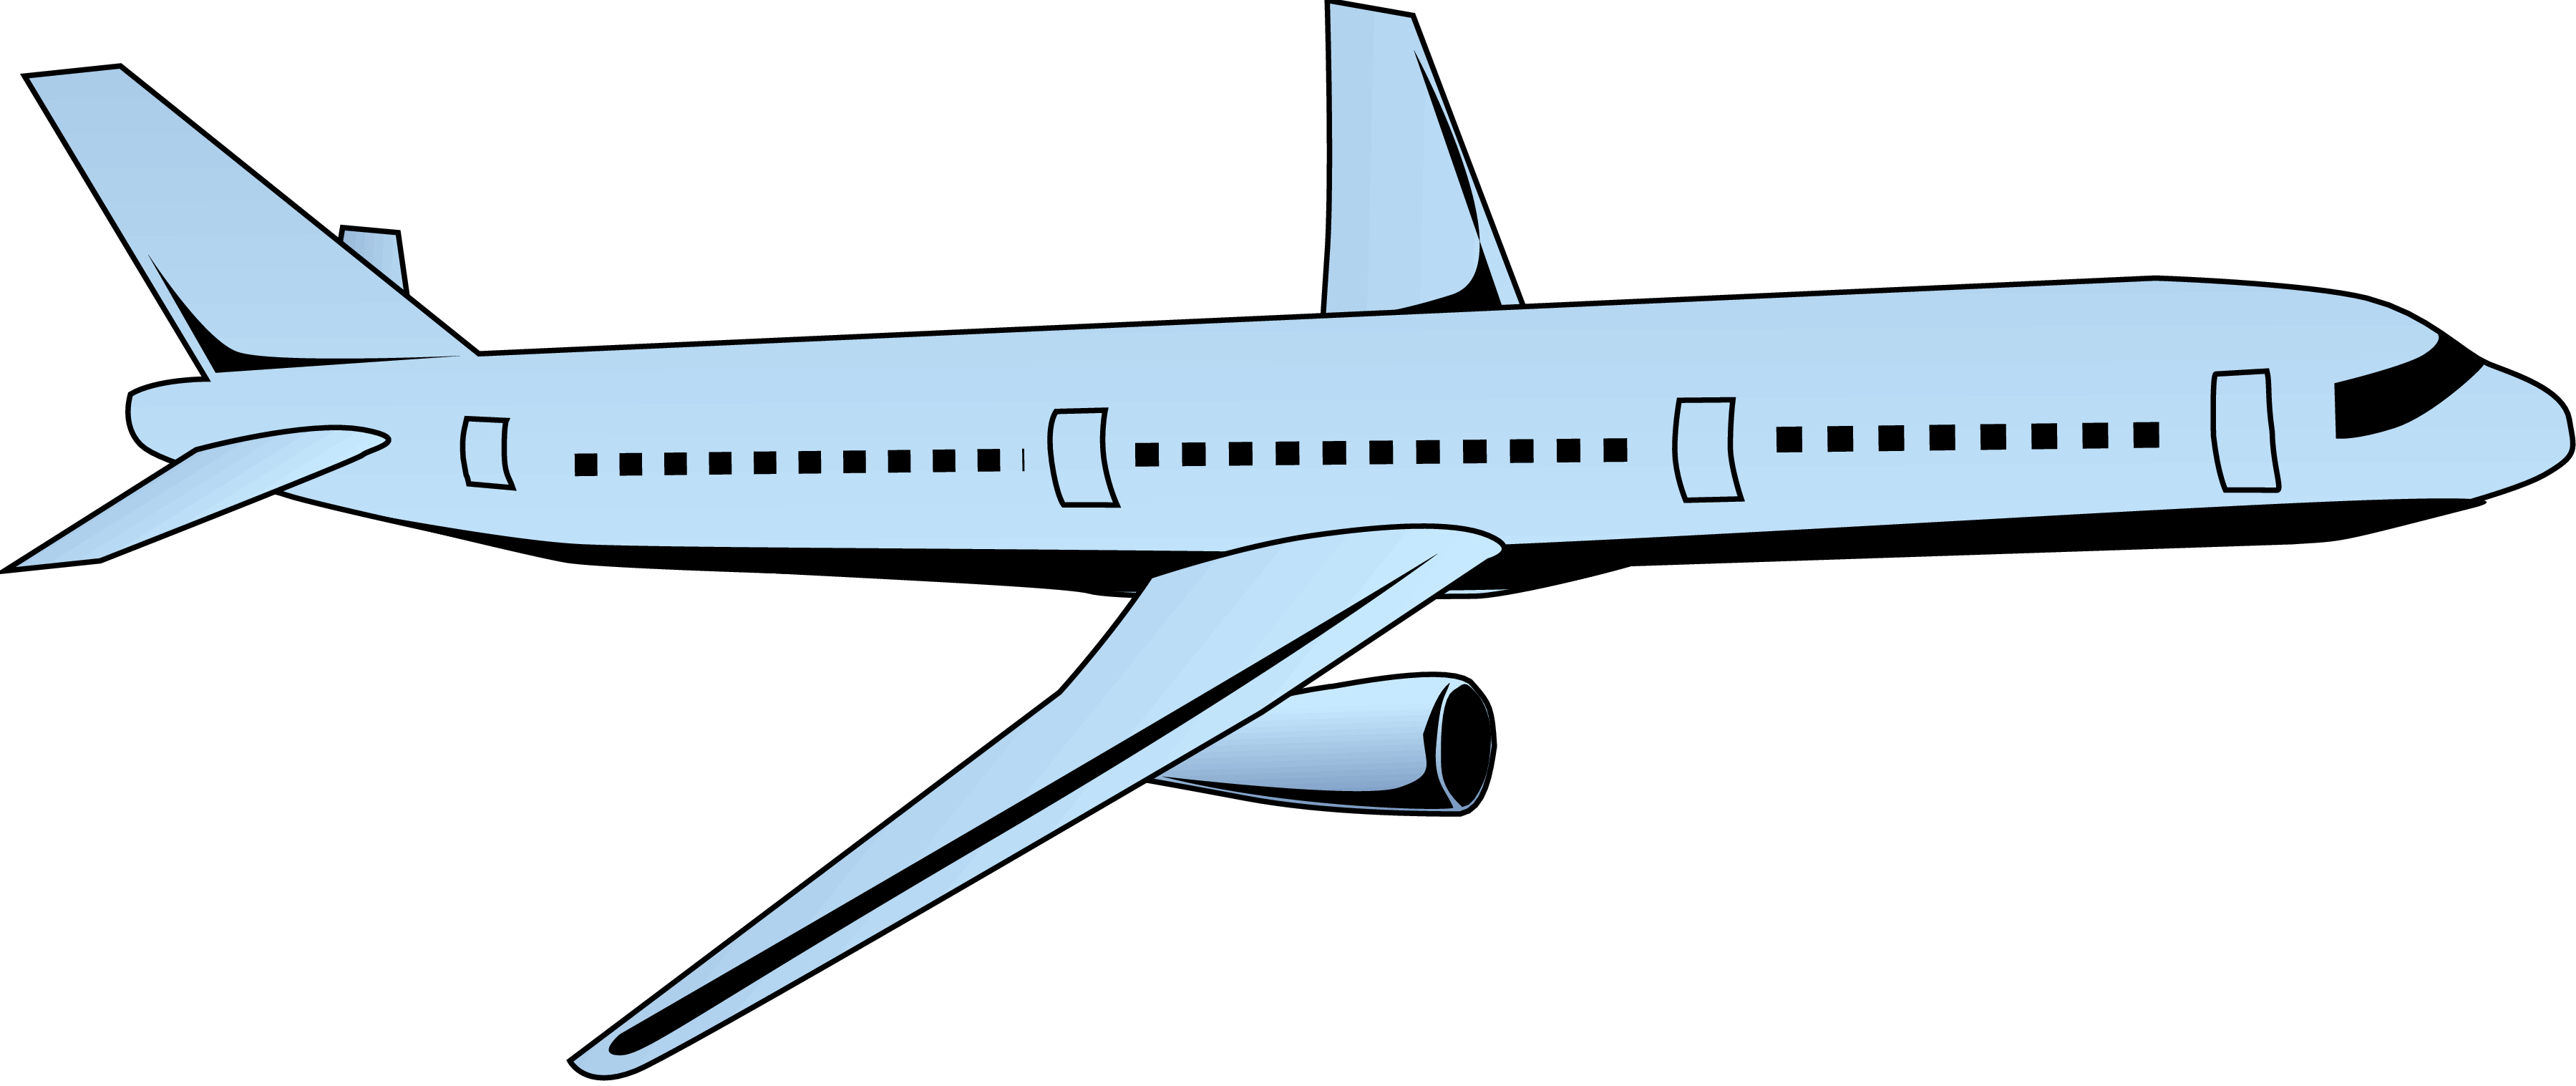 Imagen Transparente del avión